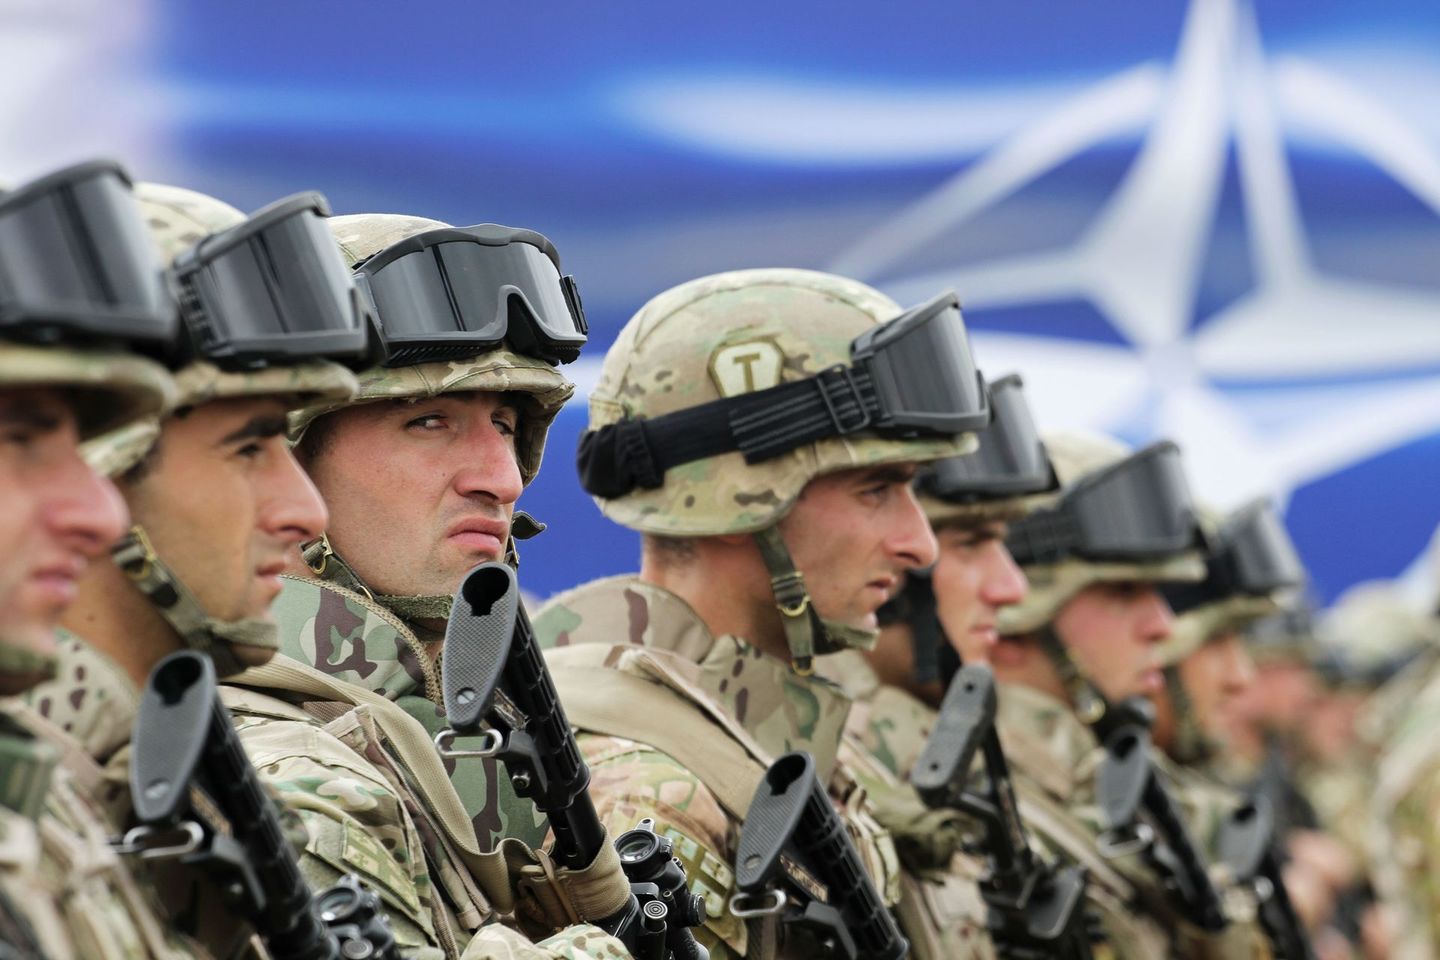 Ответ пропаганде Кремля: НАТО эффектно разоблачил фейк росСМИ о гибели своих солдат на Донбассе